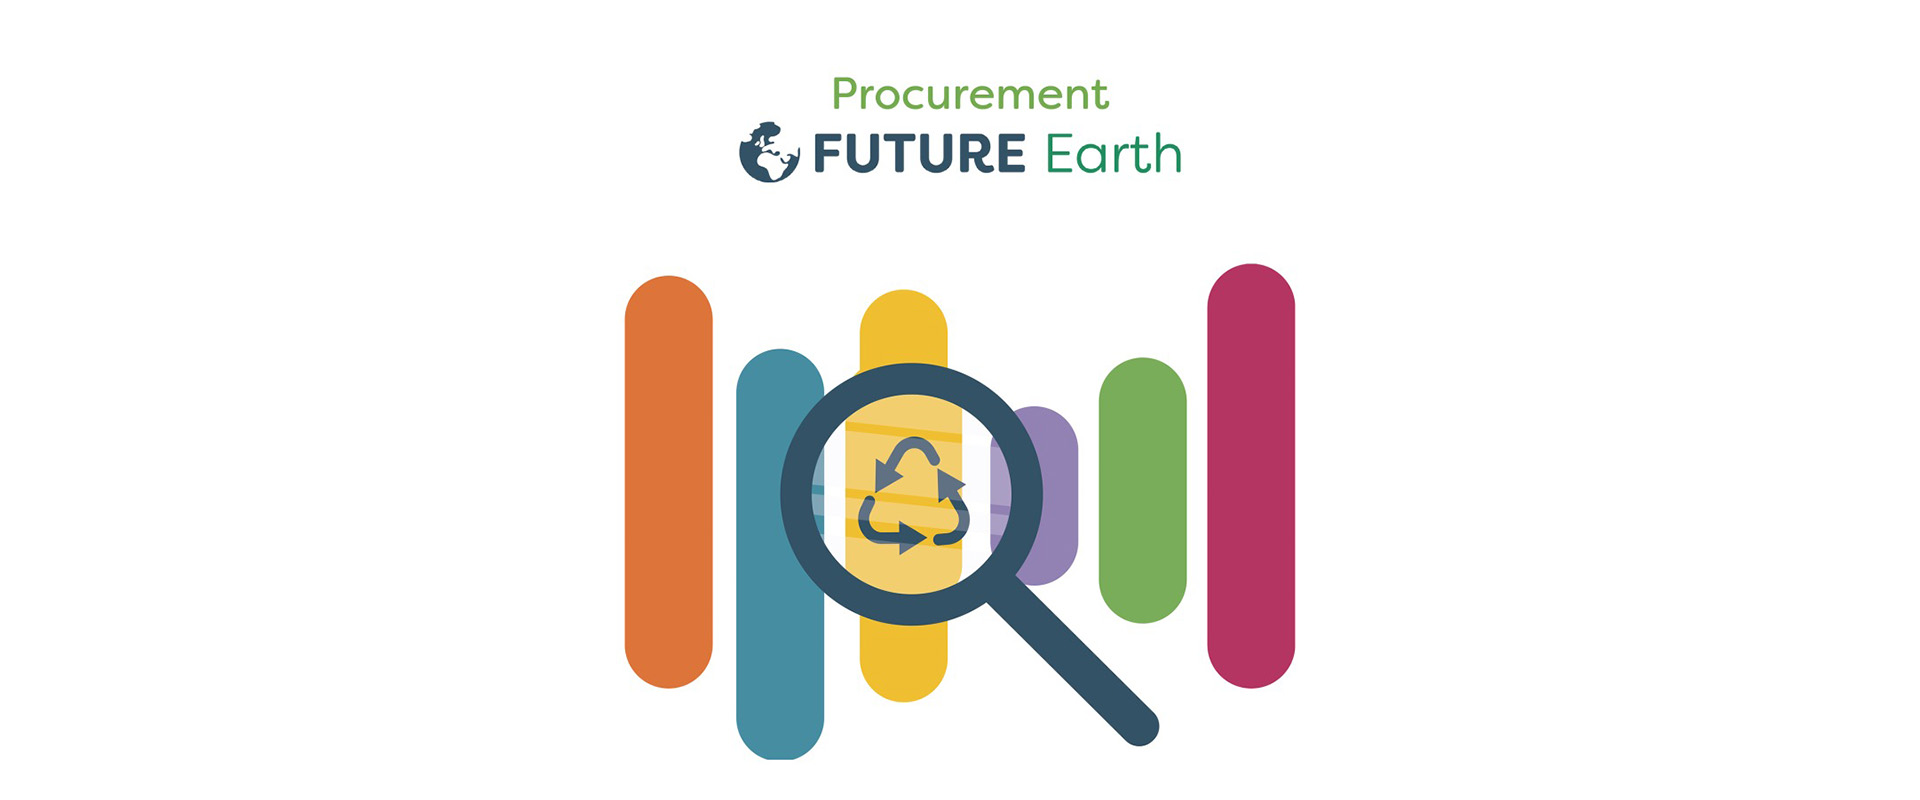 Future Earth - Procurement